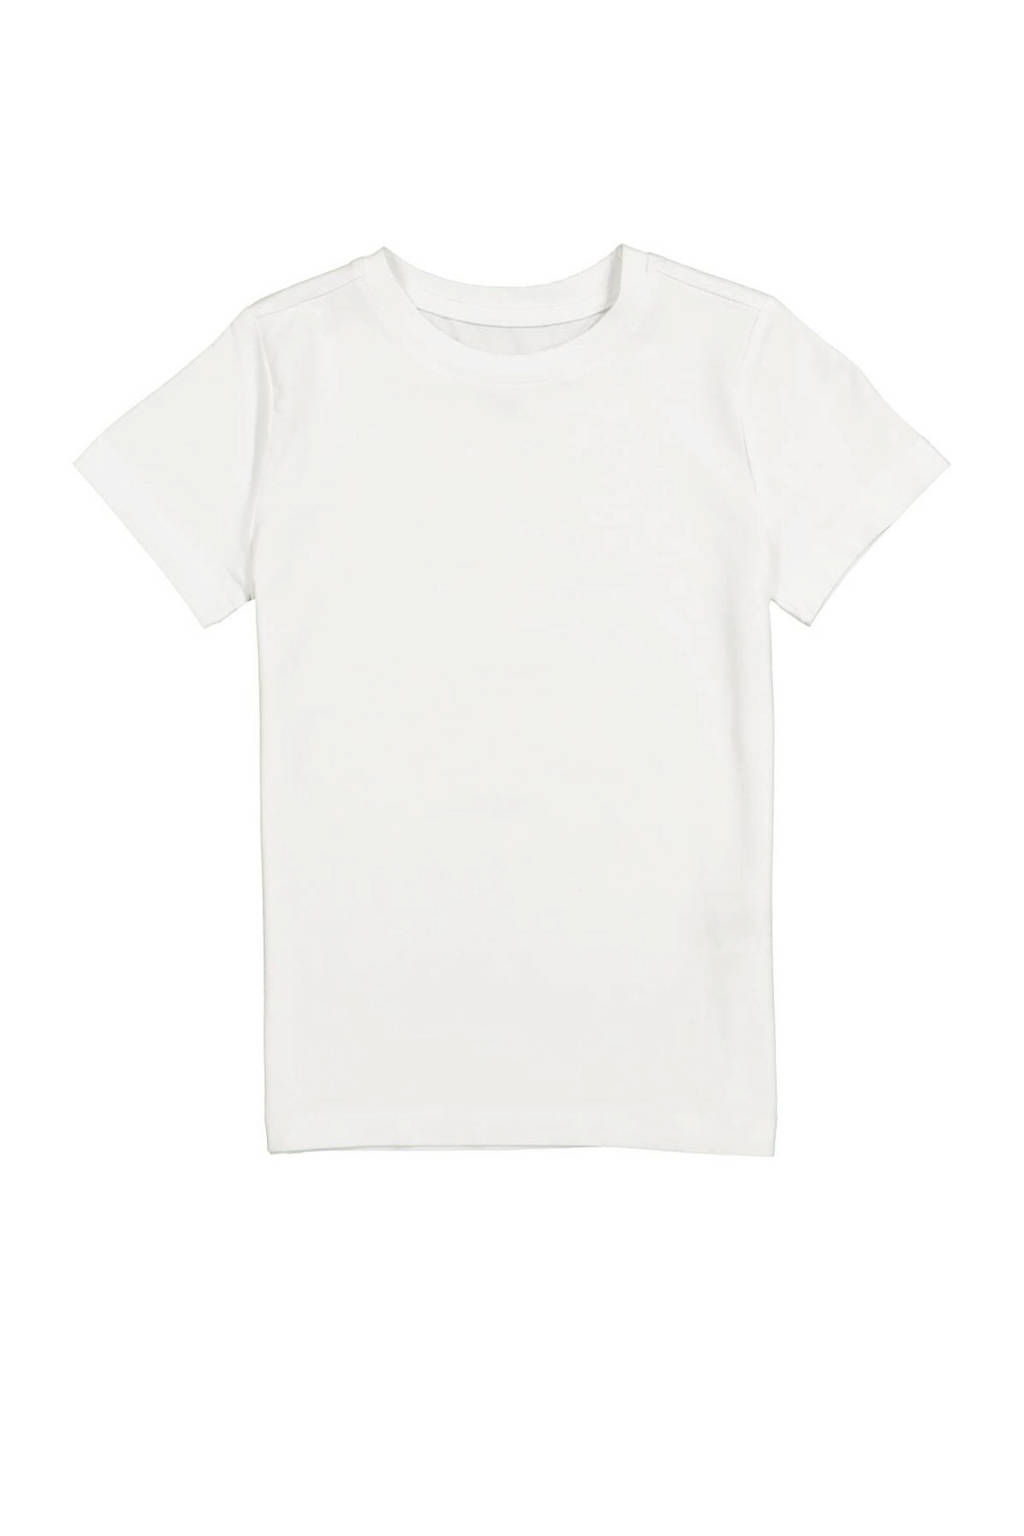 Witte jongens HEMA basic T-shirt van bamboe met korte mouwen en ronde hals